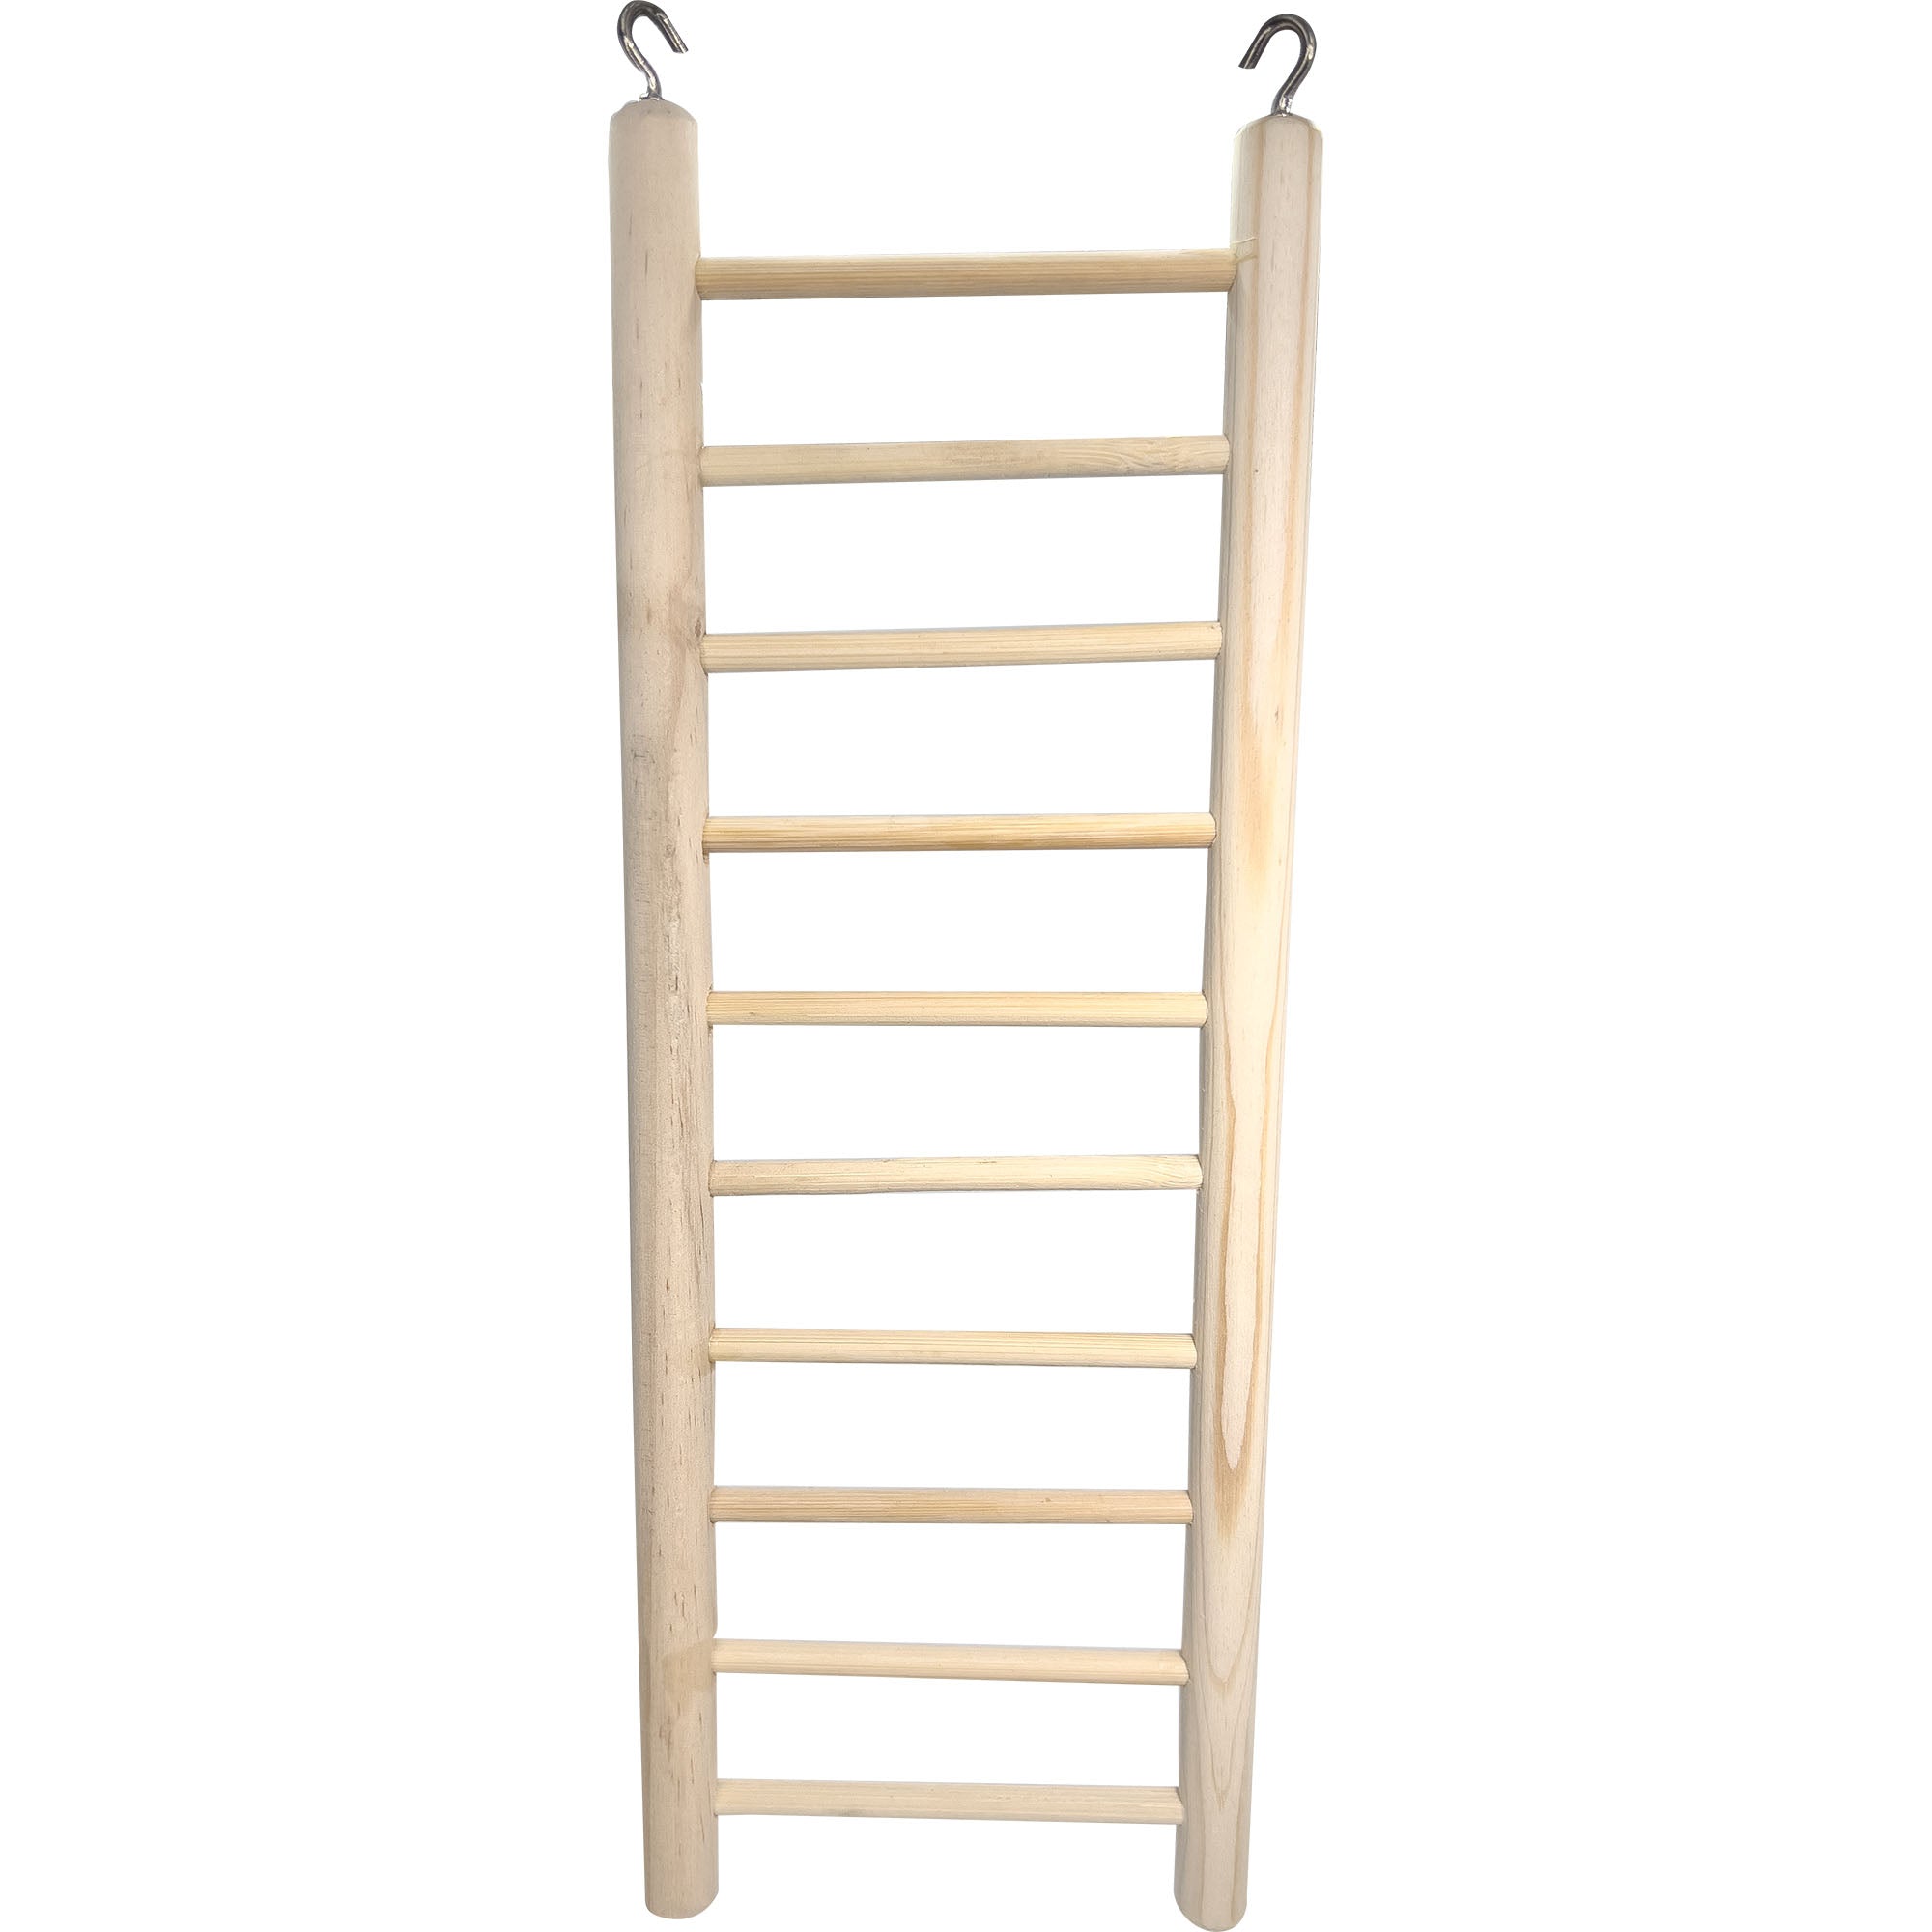 4000 12 Inch Natural Pine Hook Ladder